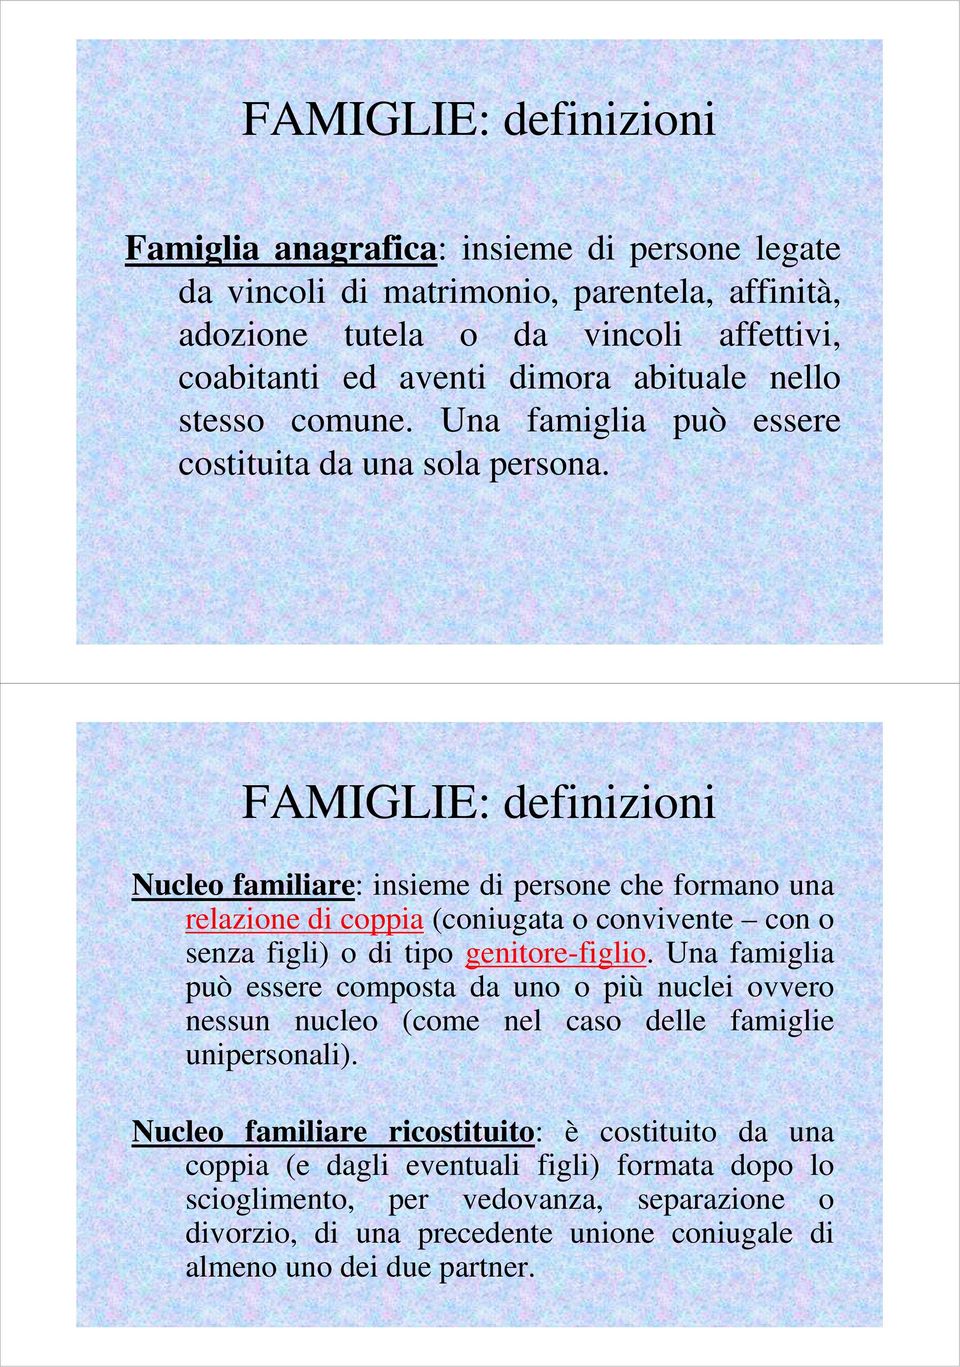 FAMIGLIE: definizioni Nucleo familiare: insieme di persone che formano una relazione di coppia (coniugata o convivente con o senza figli) o di tipo genitore-figlio.